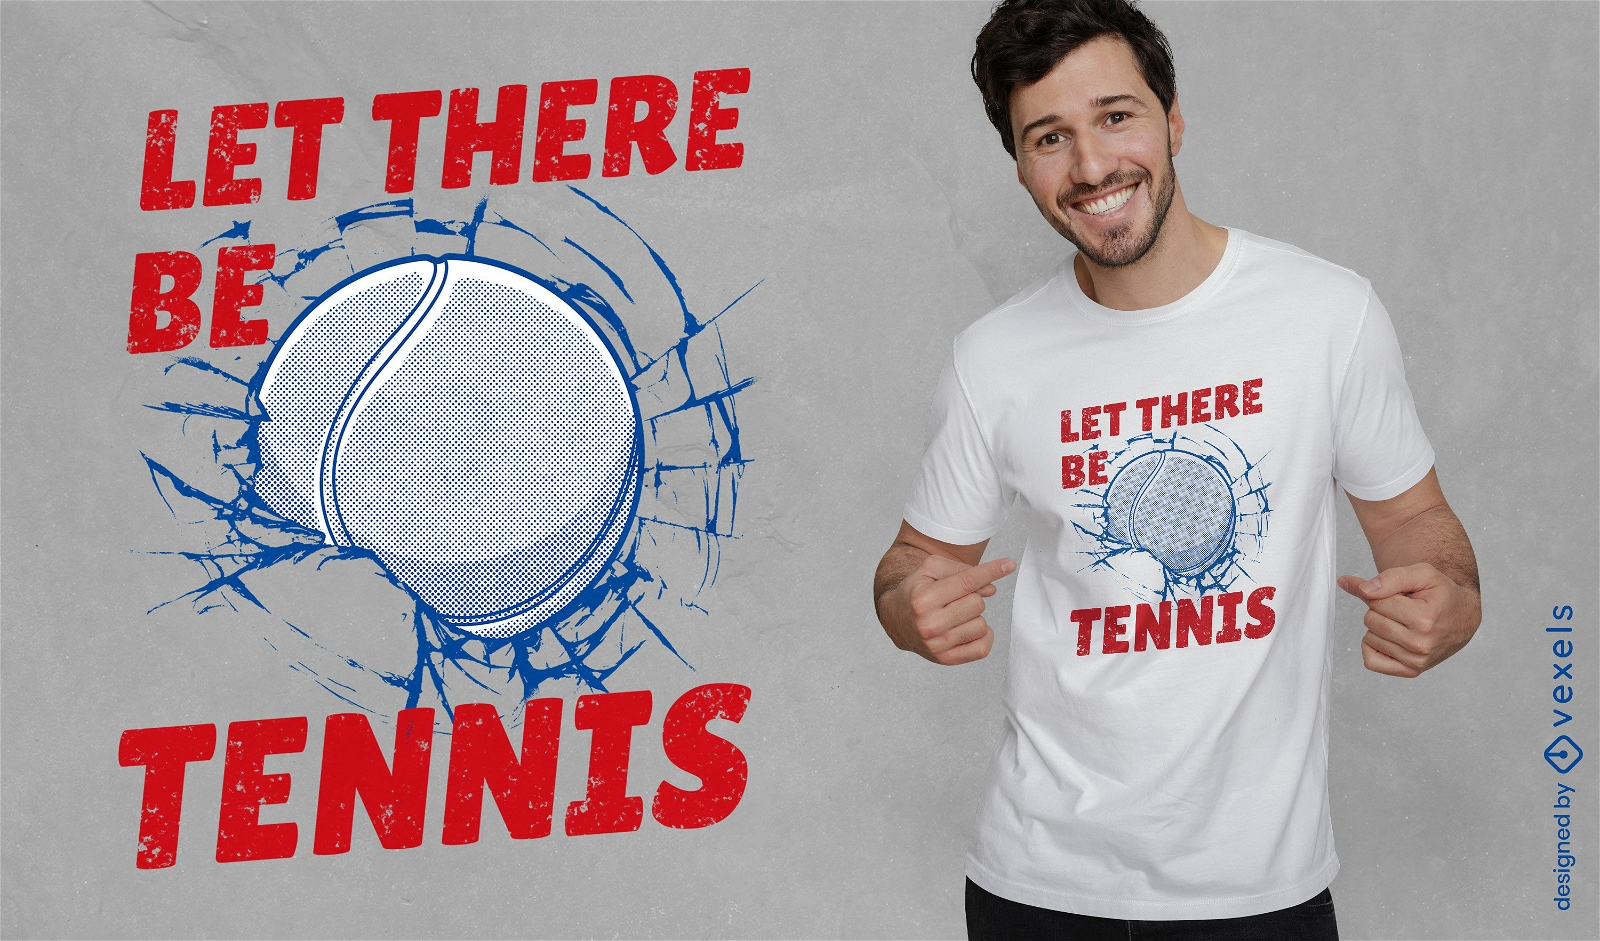 Dise?o de camiseta con cita de tenis entusiasta.